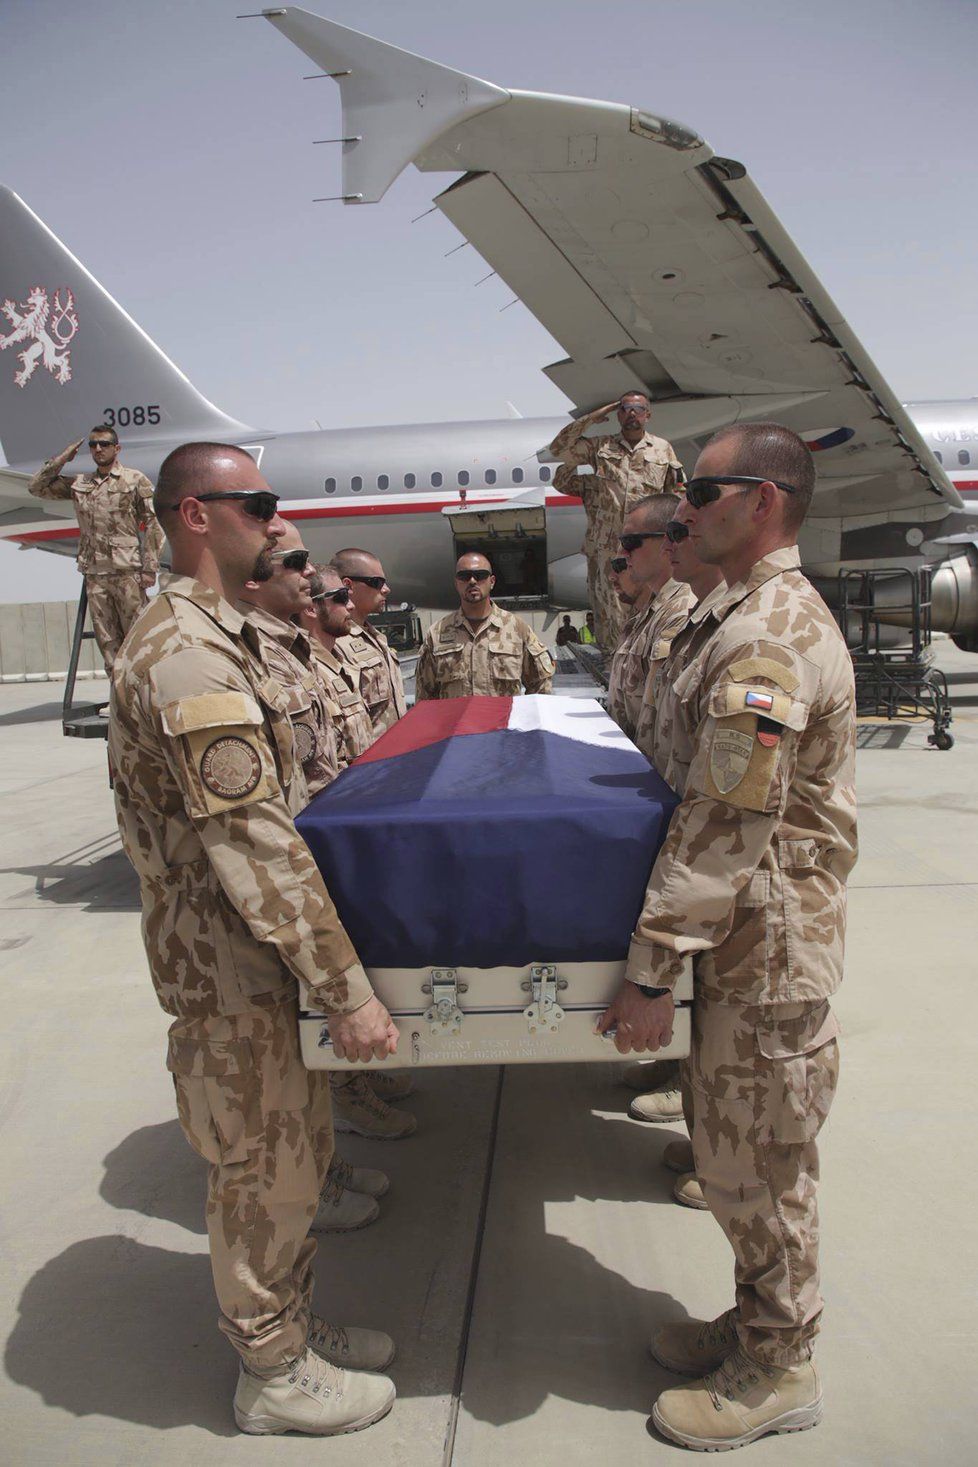 Rozloučení s trojicí padlých vojáků v Afghánistánu